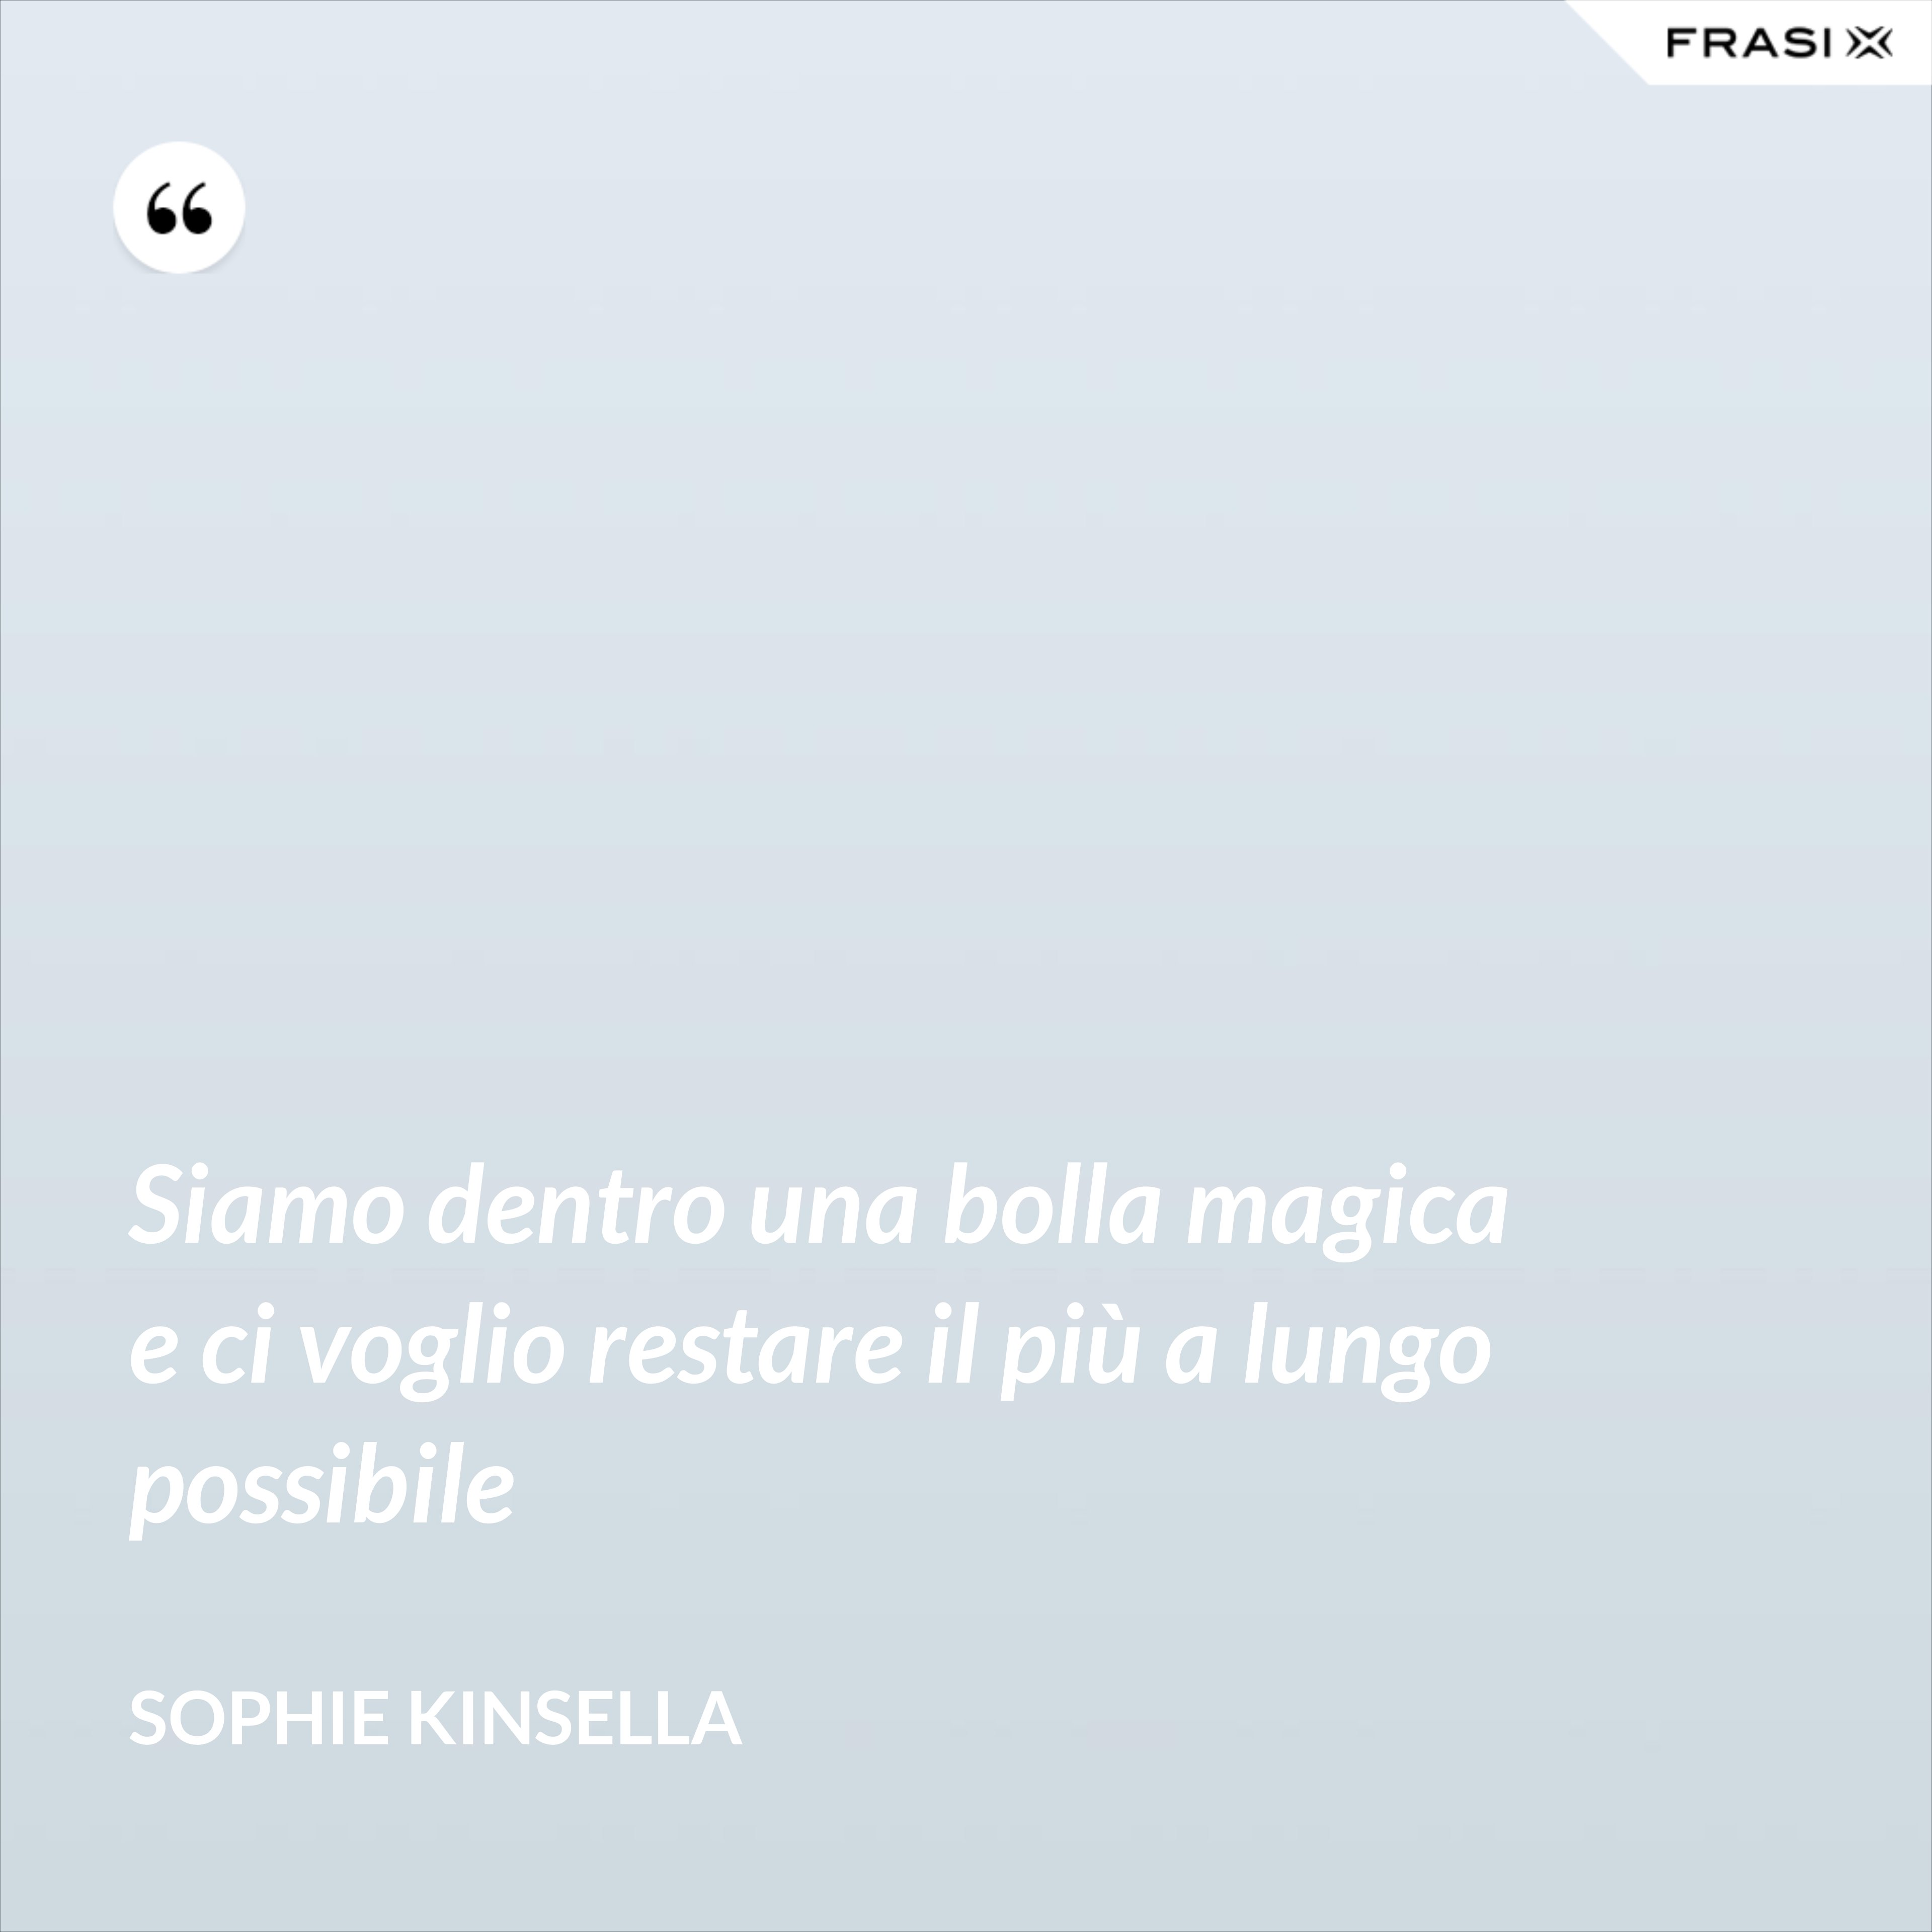 Siamo dentro una bolla magica e ci voglio restare il più a lungo possibile - Sophie Kinsella